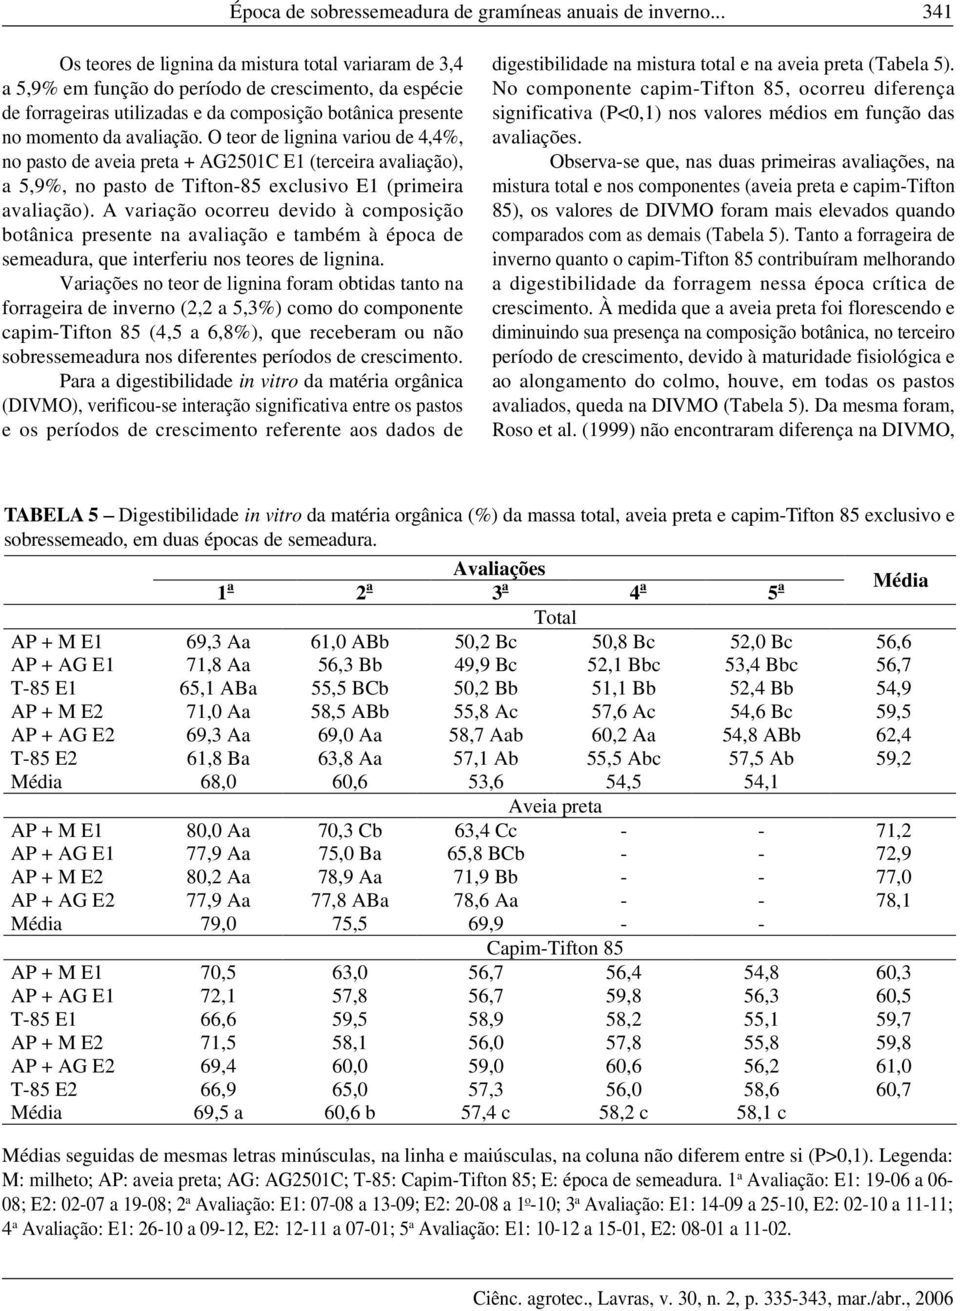 O teor de lignina variou de 4,4%, no pasto de aveia preta + AG2501C E1 (terceira avaliação), a 5,9%, no pasto de Tifton-85 exclusivo E1 (primeira avaliação).